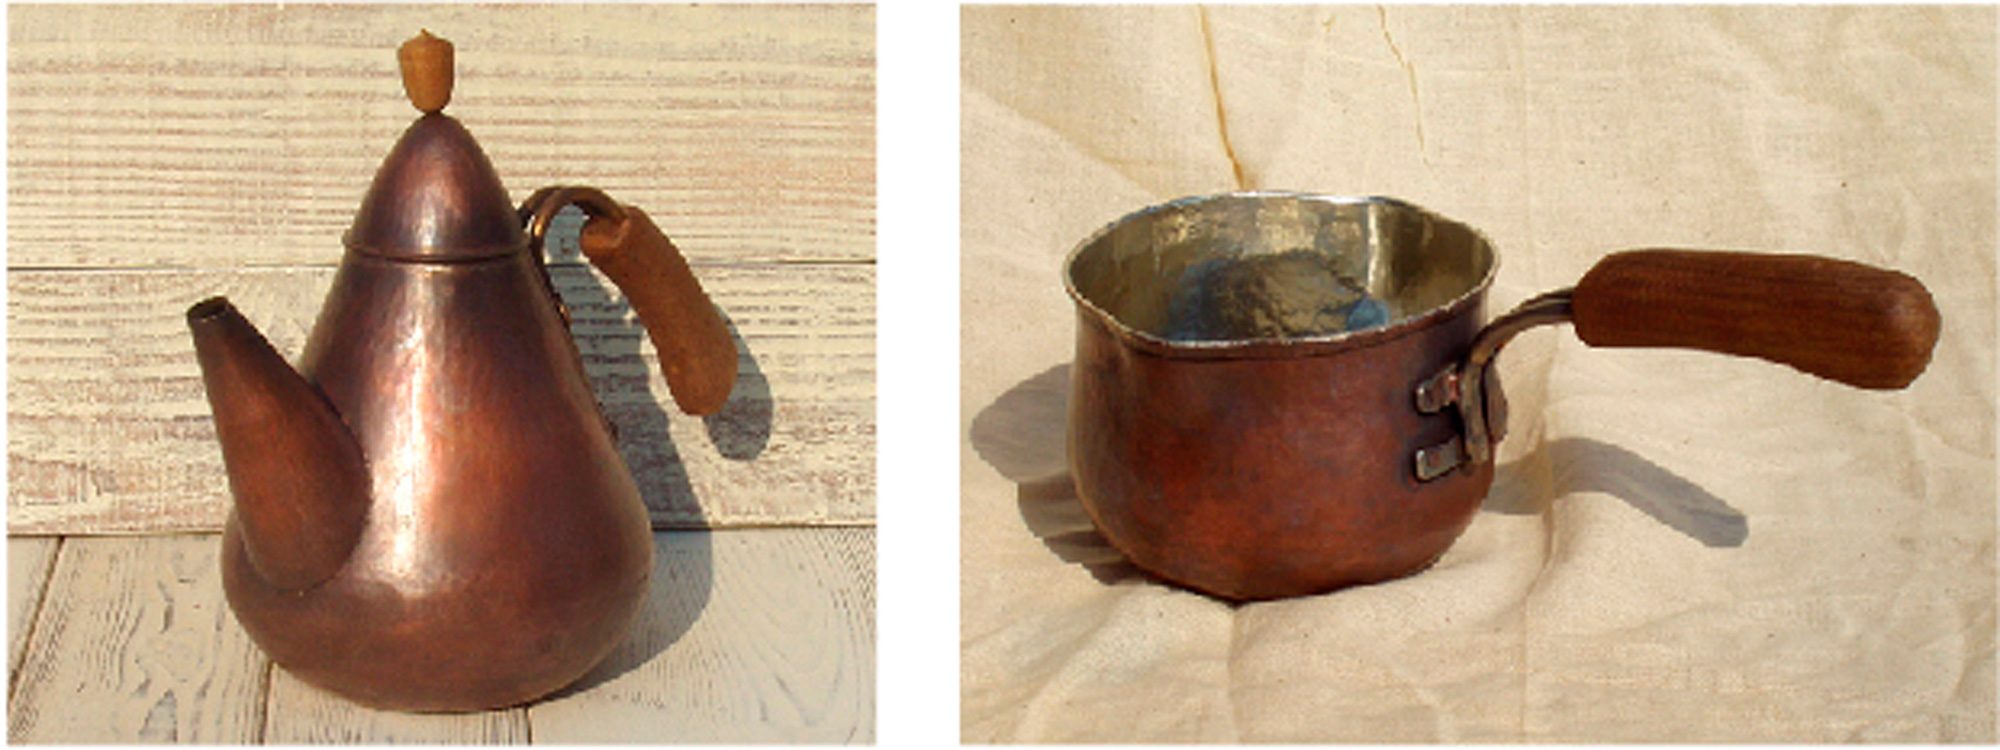 銅製のヤカンや鍋。座銅は熱伝導が良く、あっという間にお湯が沸く